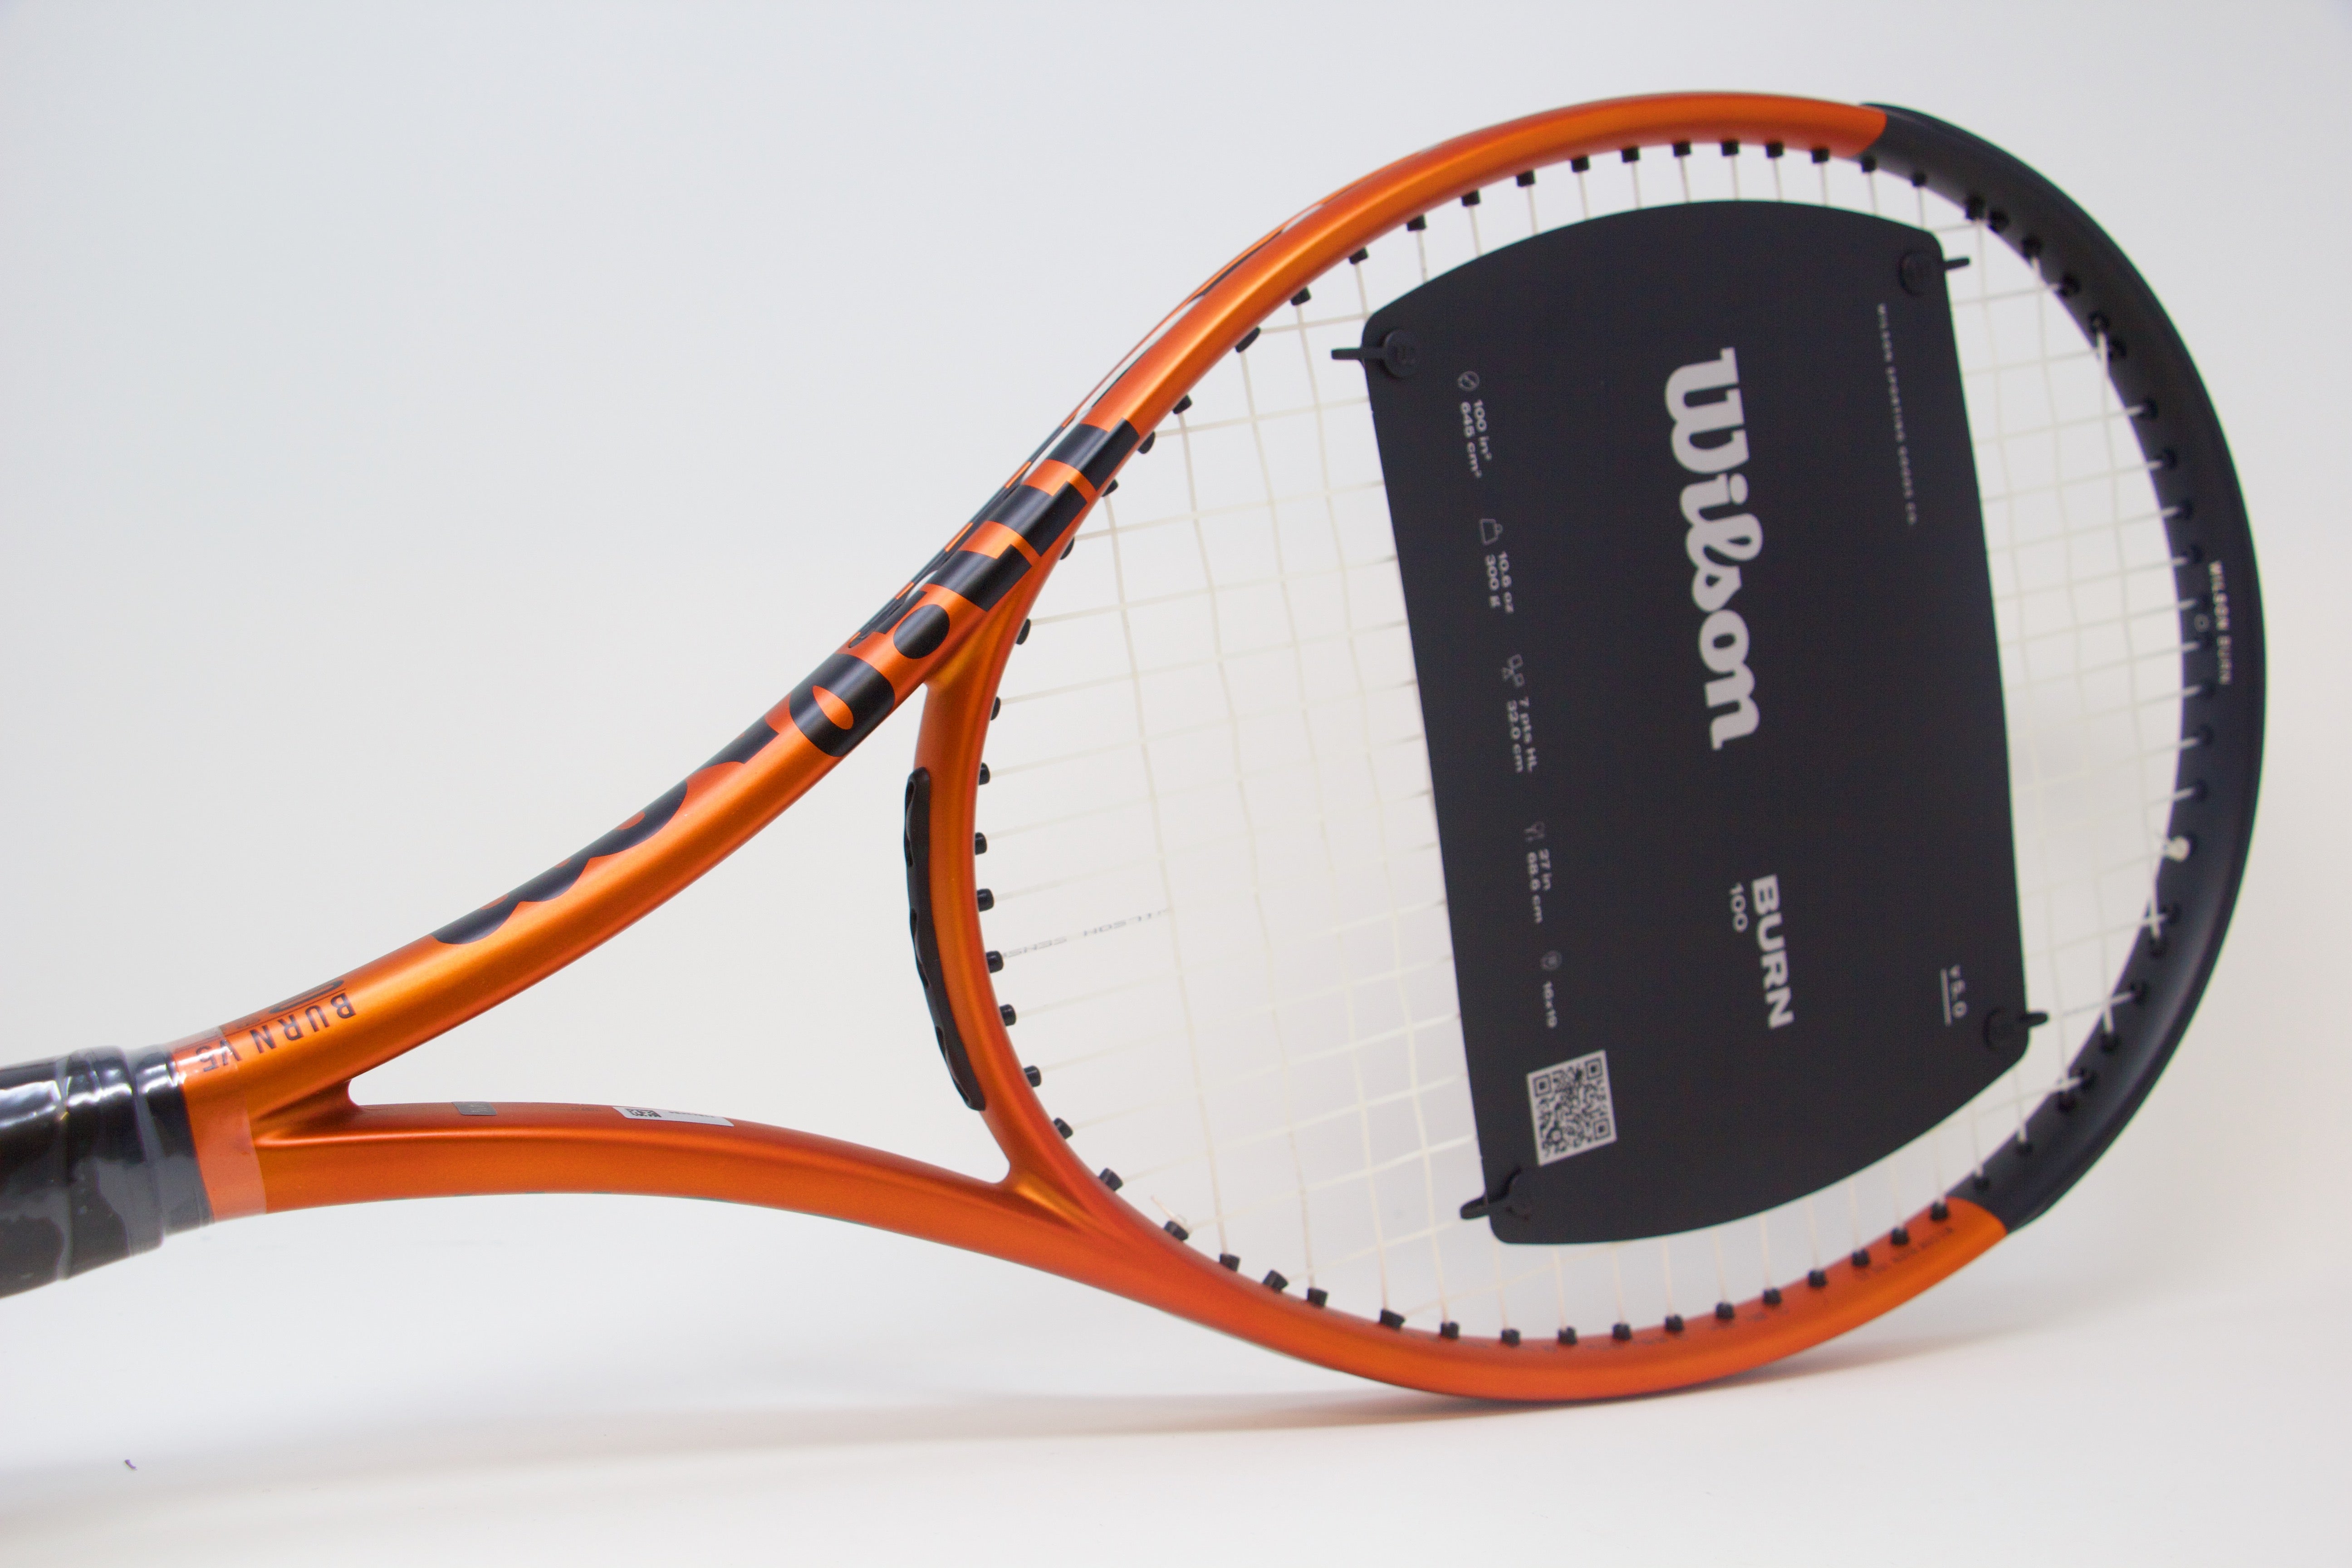 Wilson Burn 100 V5 (300g) Tennis Racket